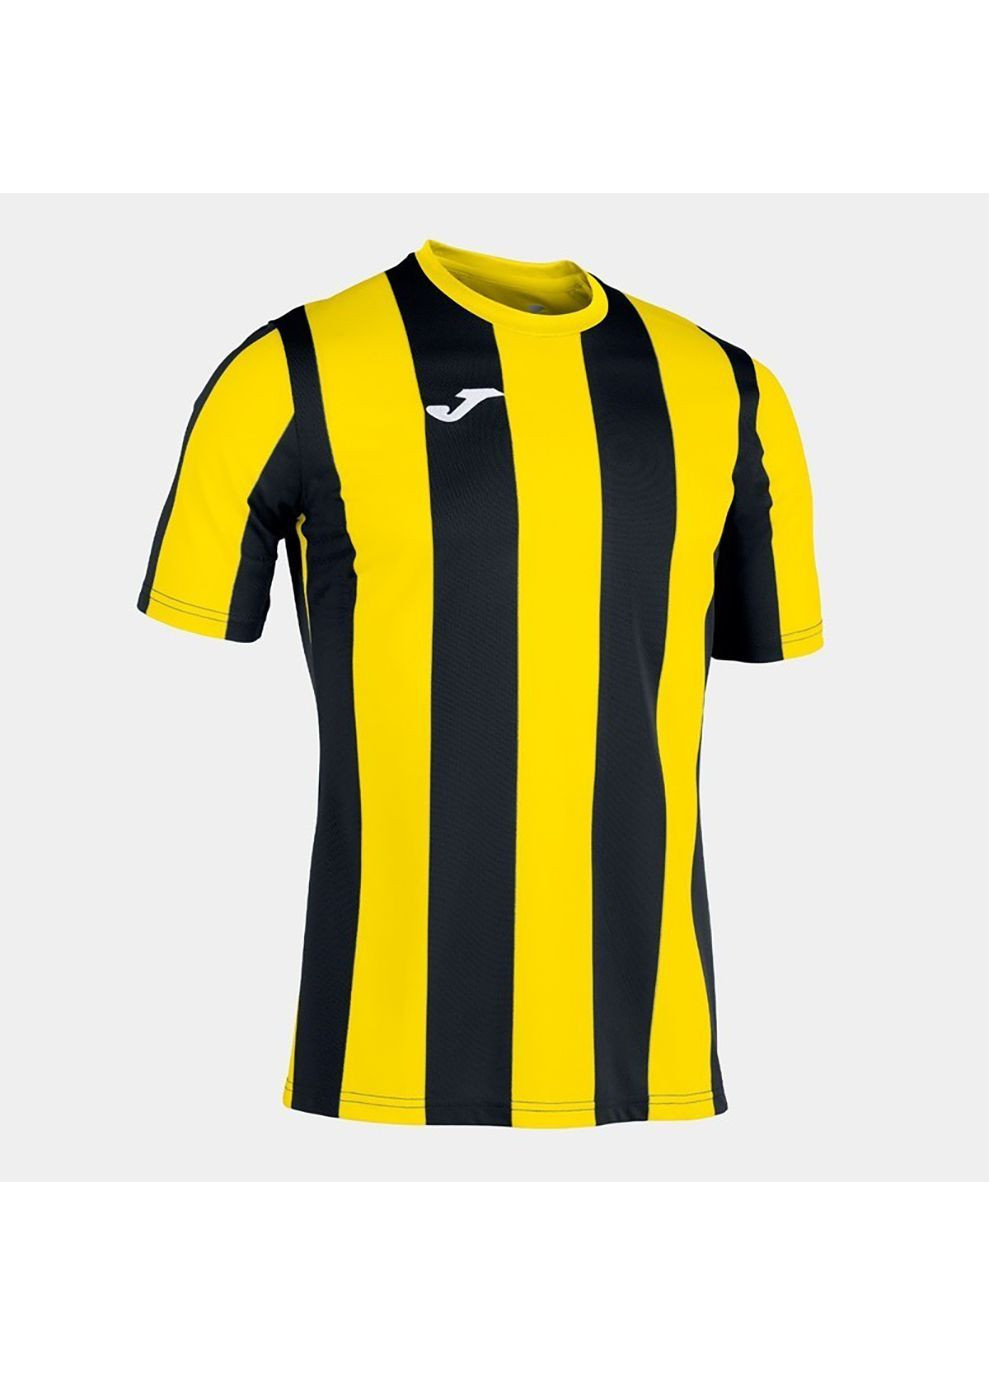 Желтая футболка inter t-shirt s/s желтый,черный Joma